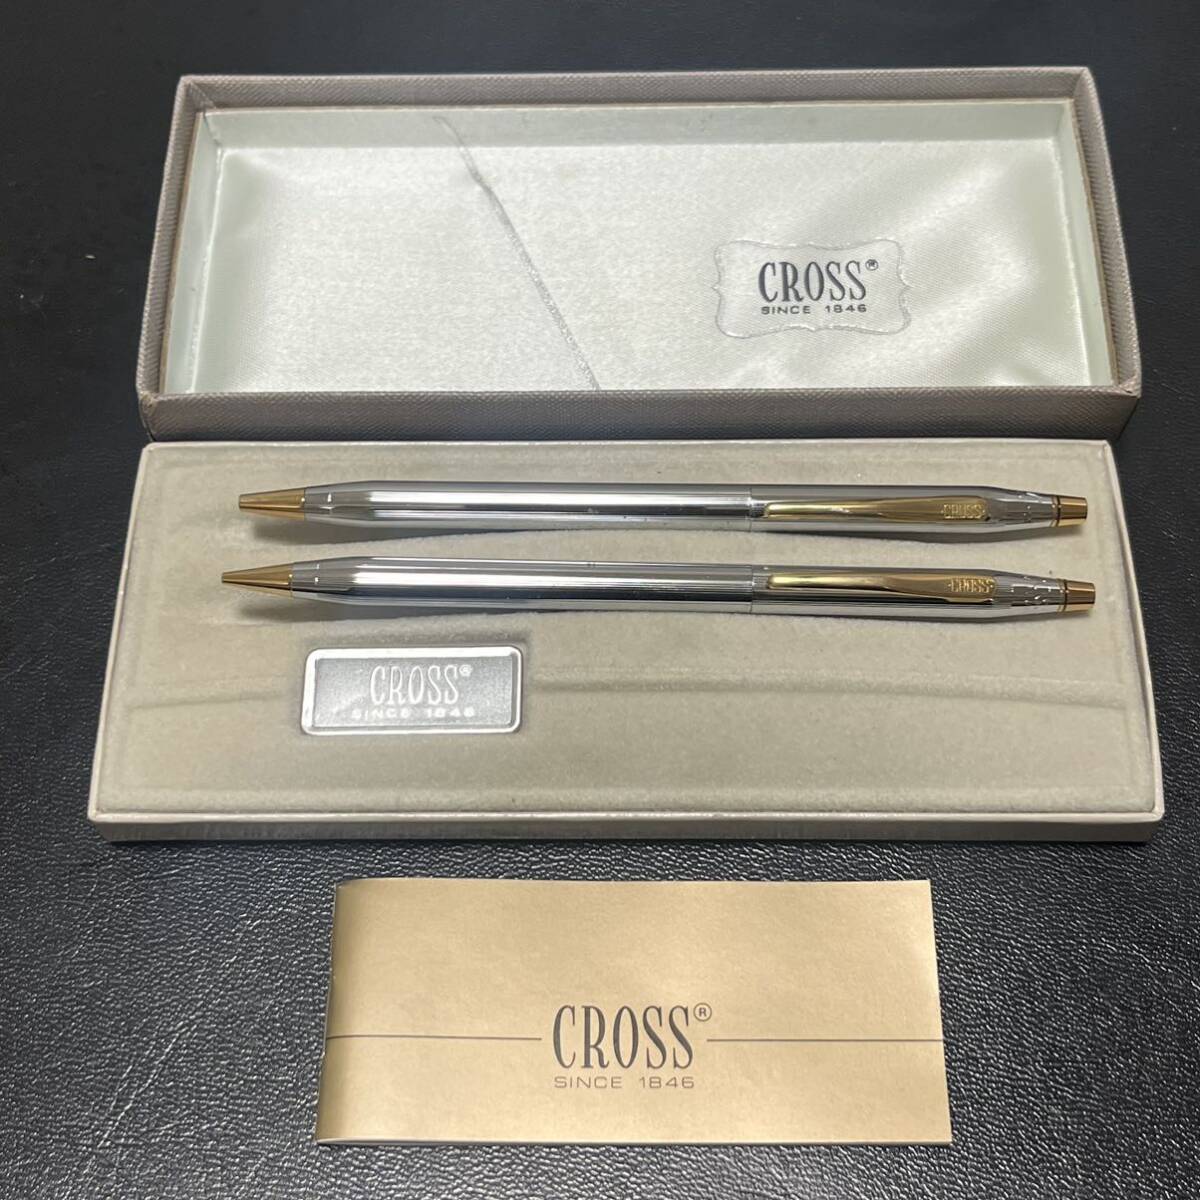 クロス CROSS ボールペン シャープペンシル セット クラシックセンチュリー ツイスト式 筆記用具 箱付 の画像1